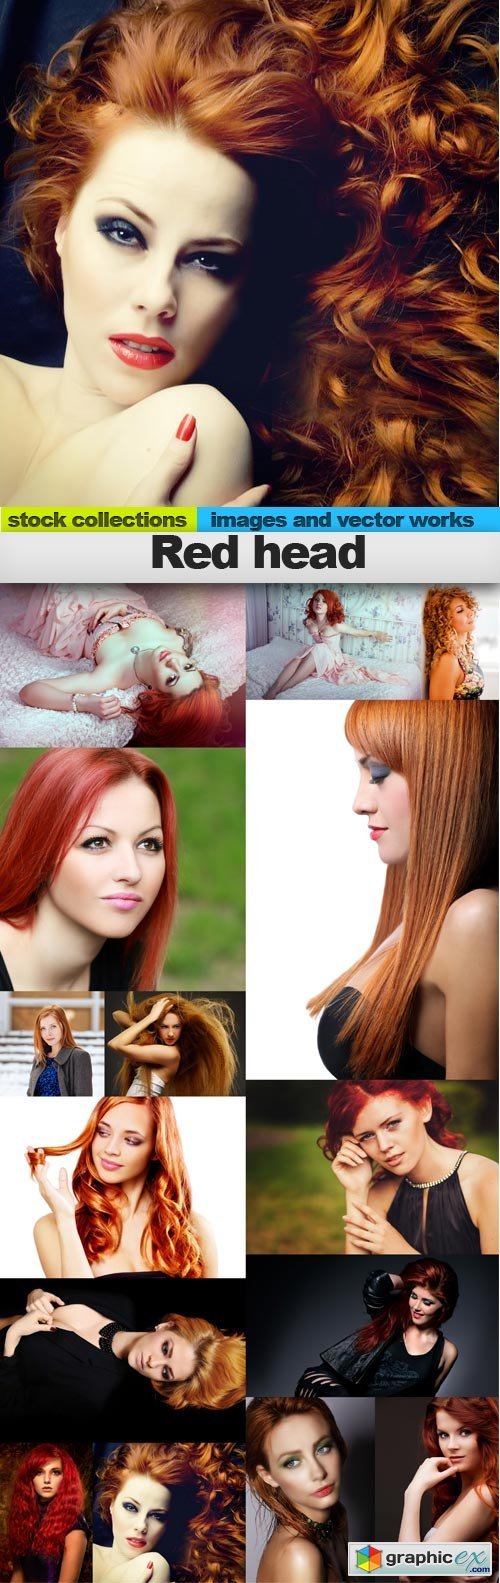 Red head, 15 x UHQ JPEG